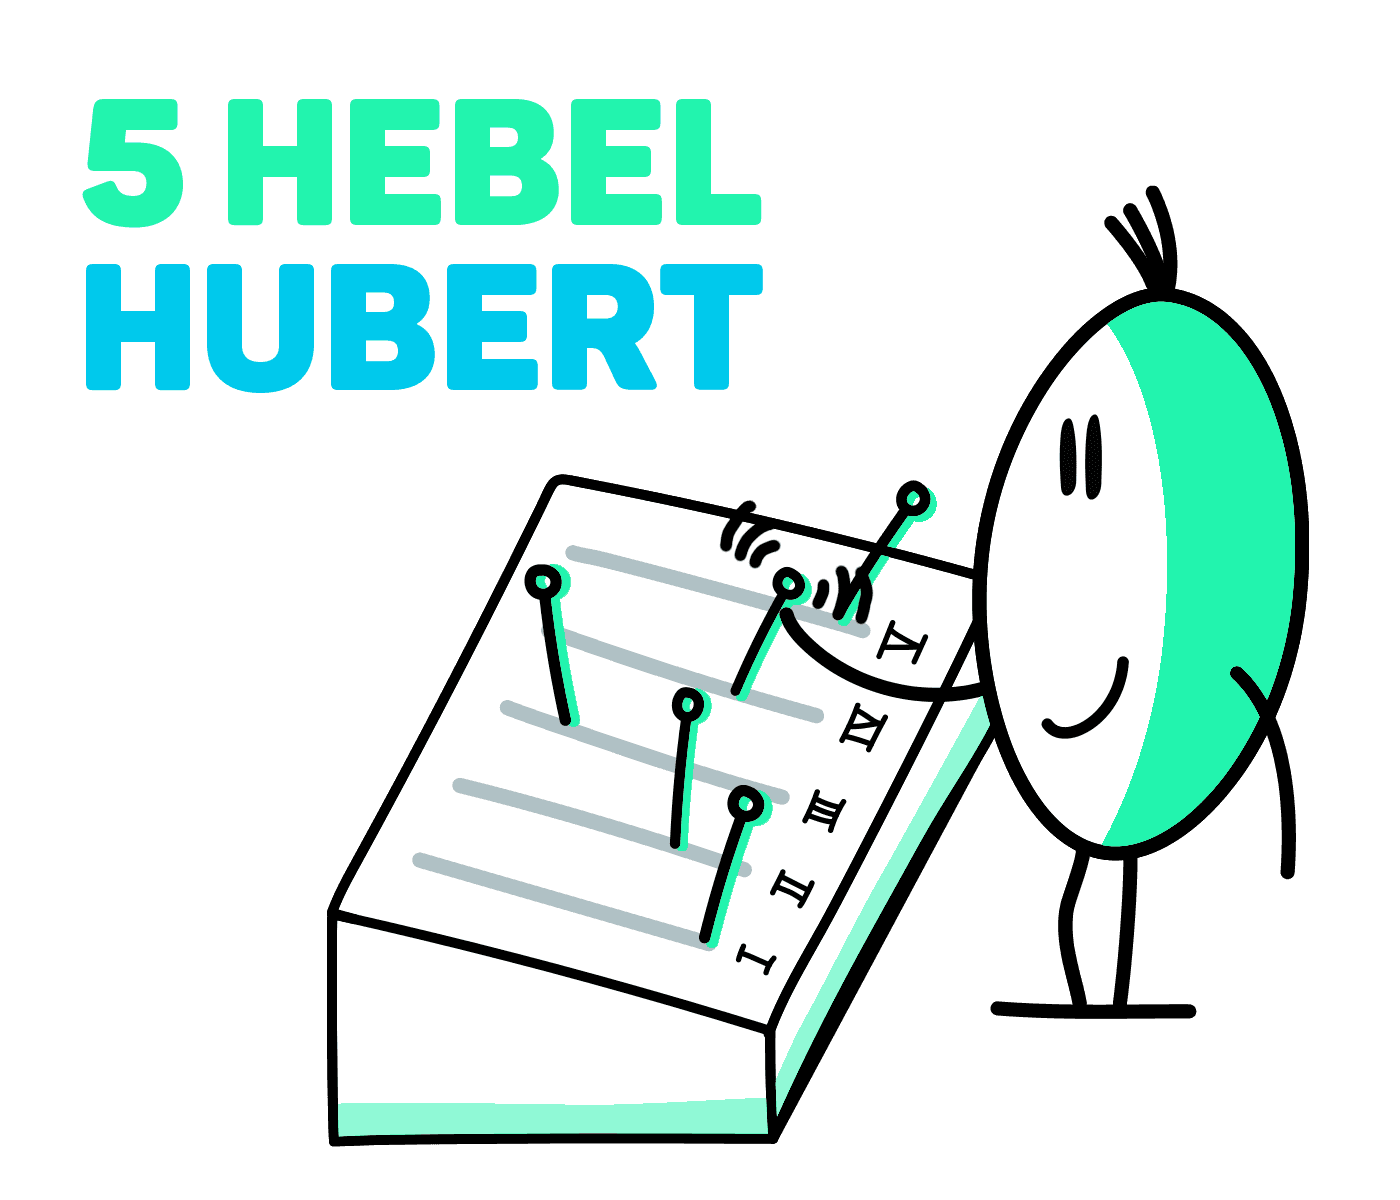 5 Hebel Hubert